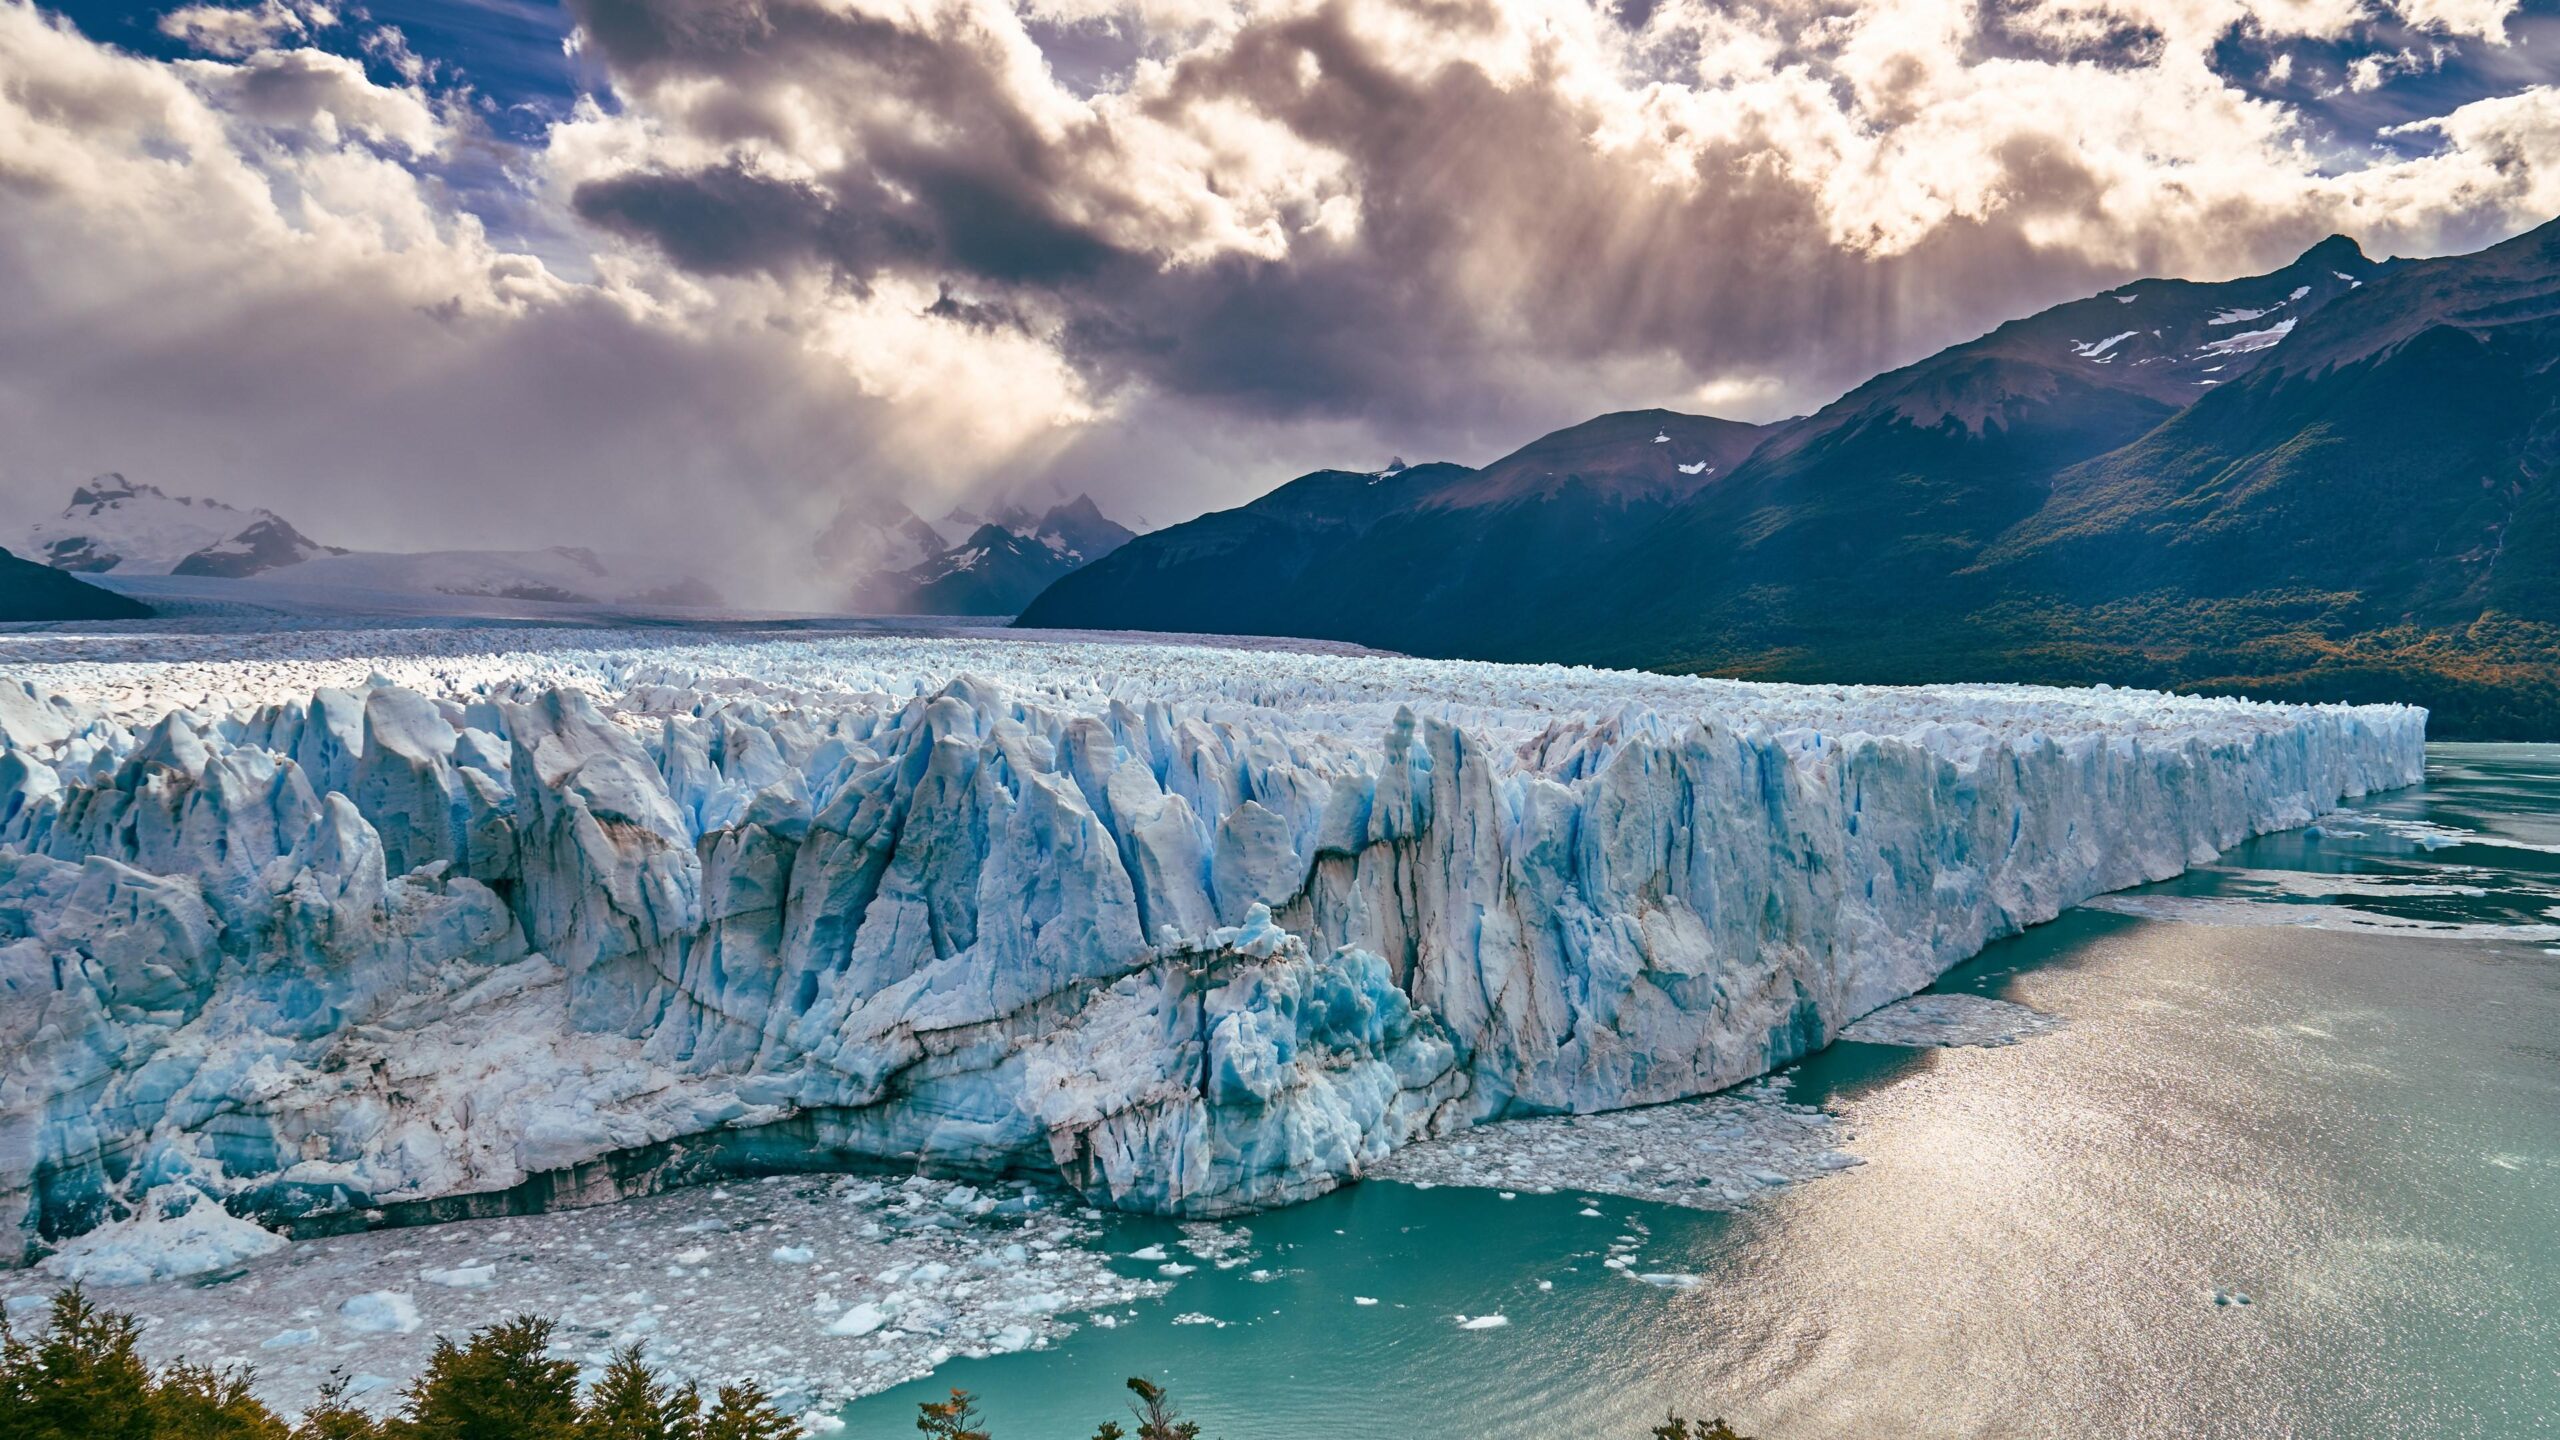 Download wallpaper Perito Moreno Glacier